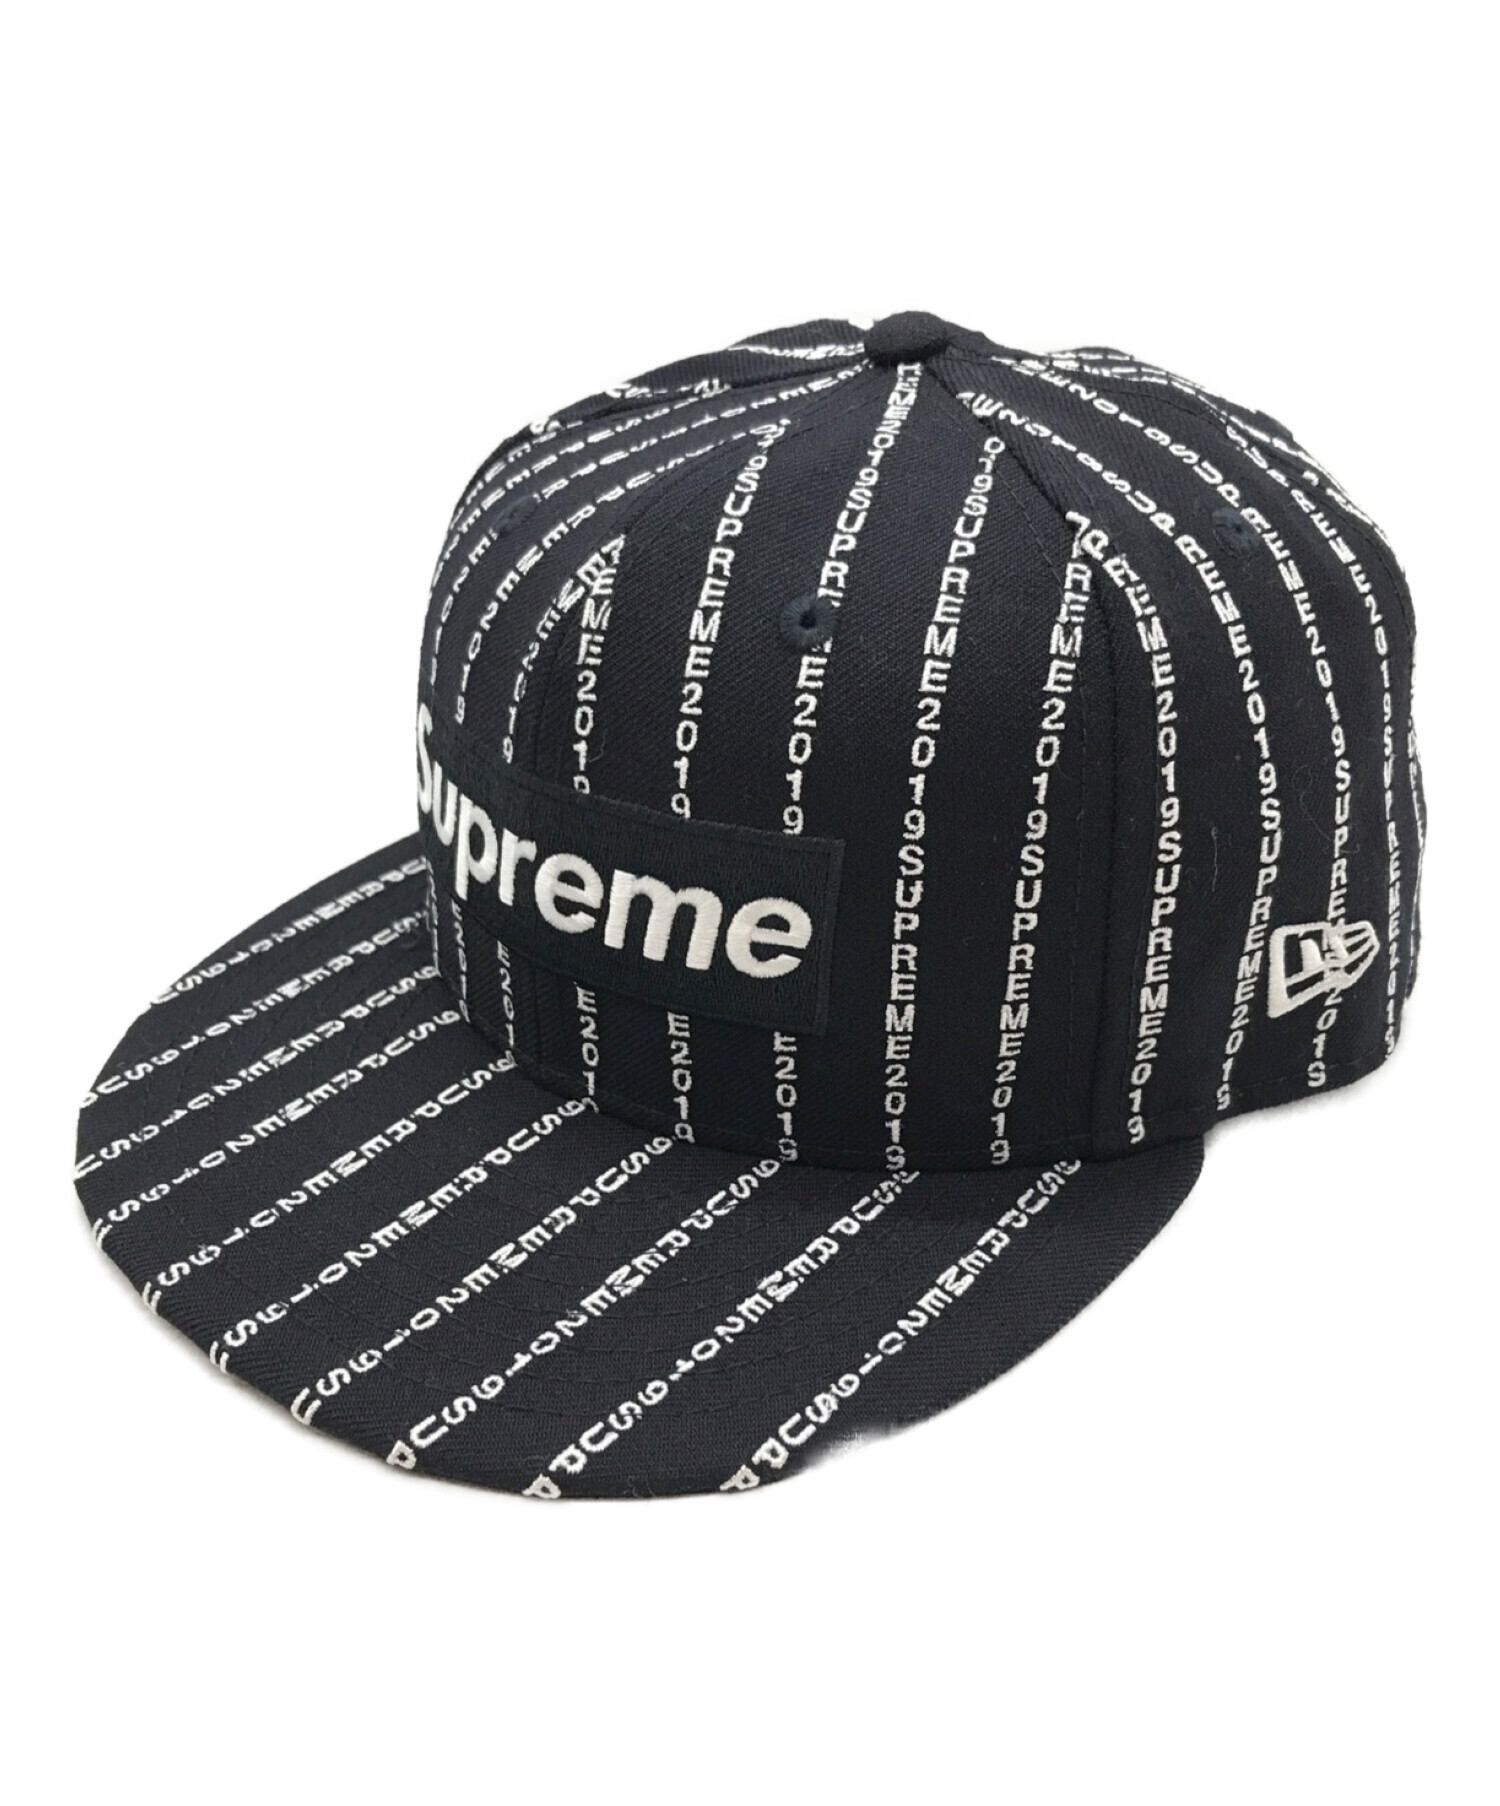 シュプリーム ニューエラ Supreme Text Stripe New Era帽子